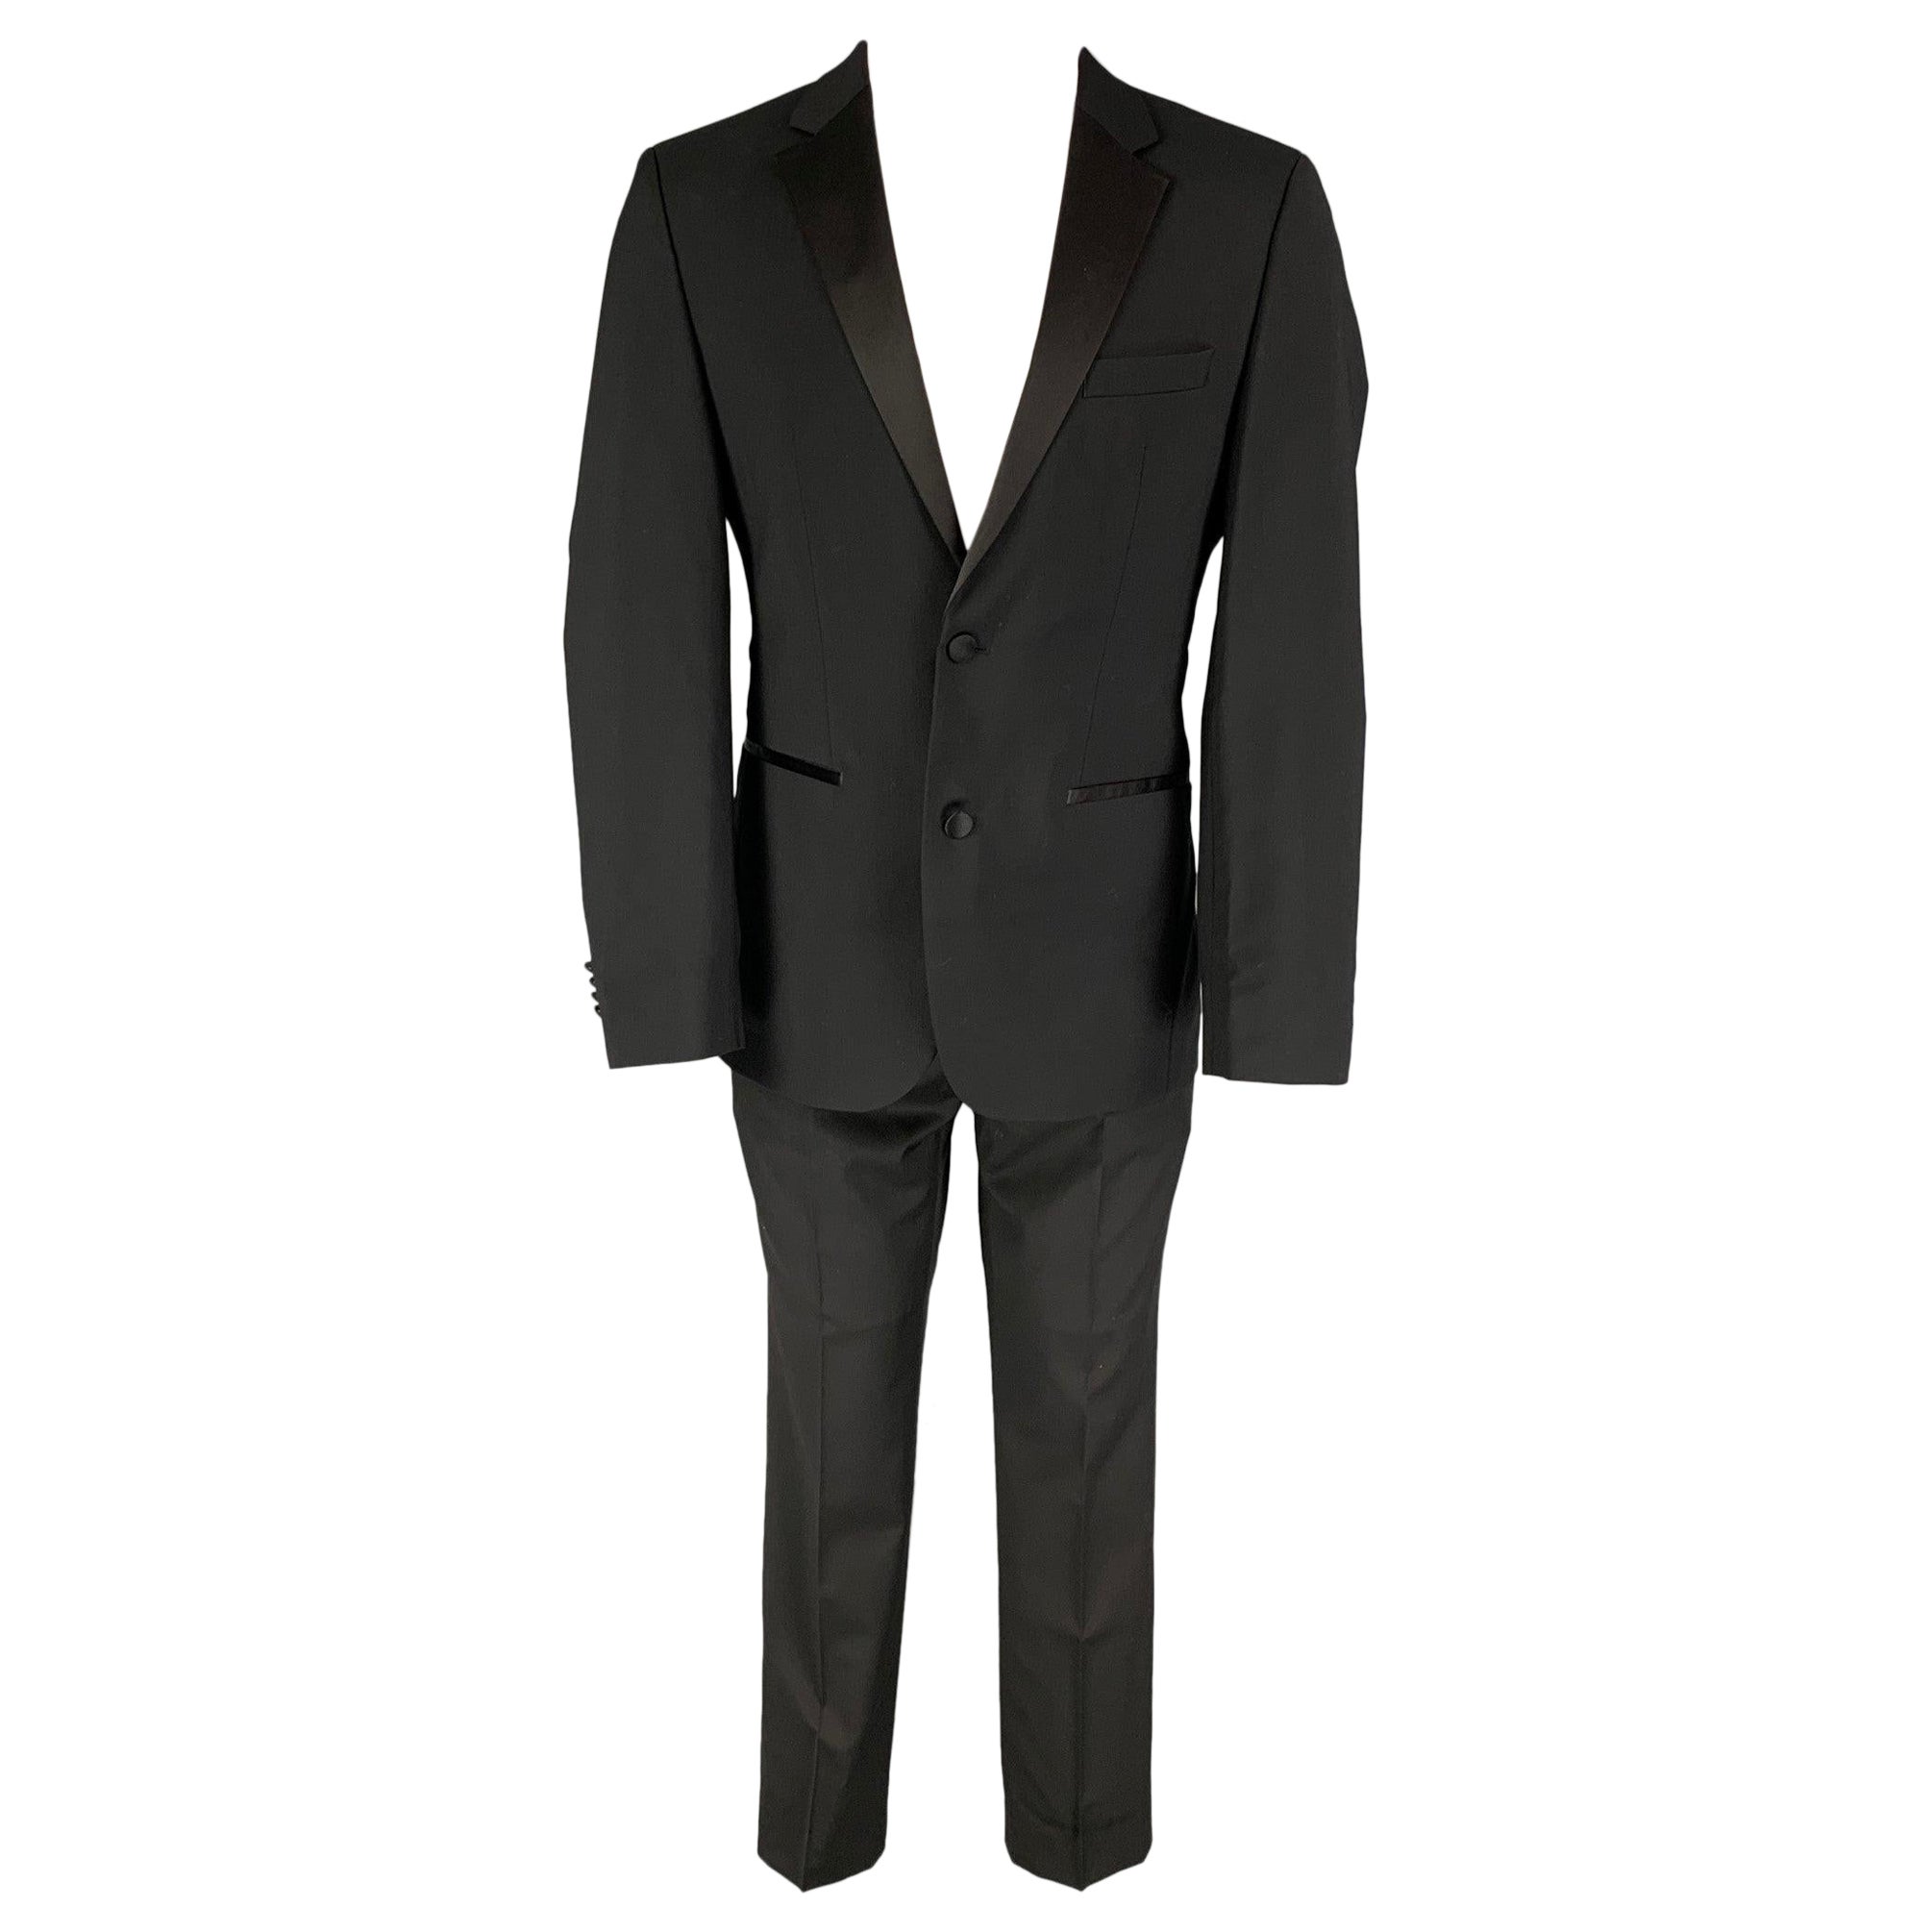 CALVIN KLEIN COLLECTION Size 36 Black Wool Notch Lapel Tuxedo Suit For Sale